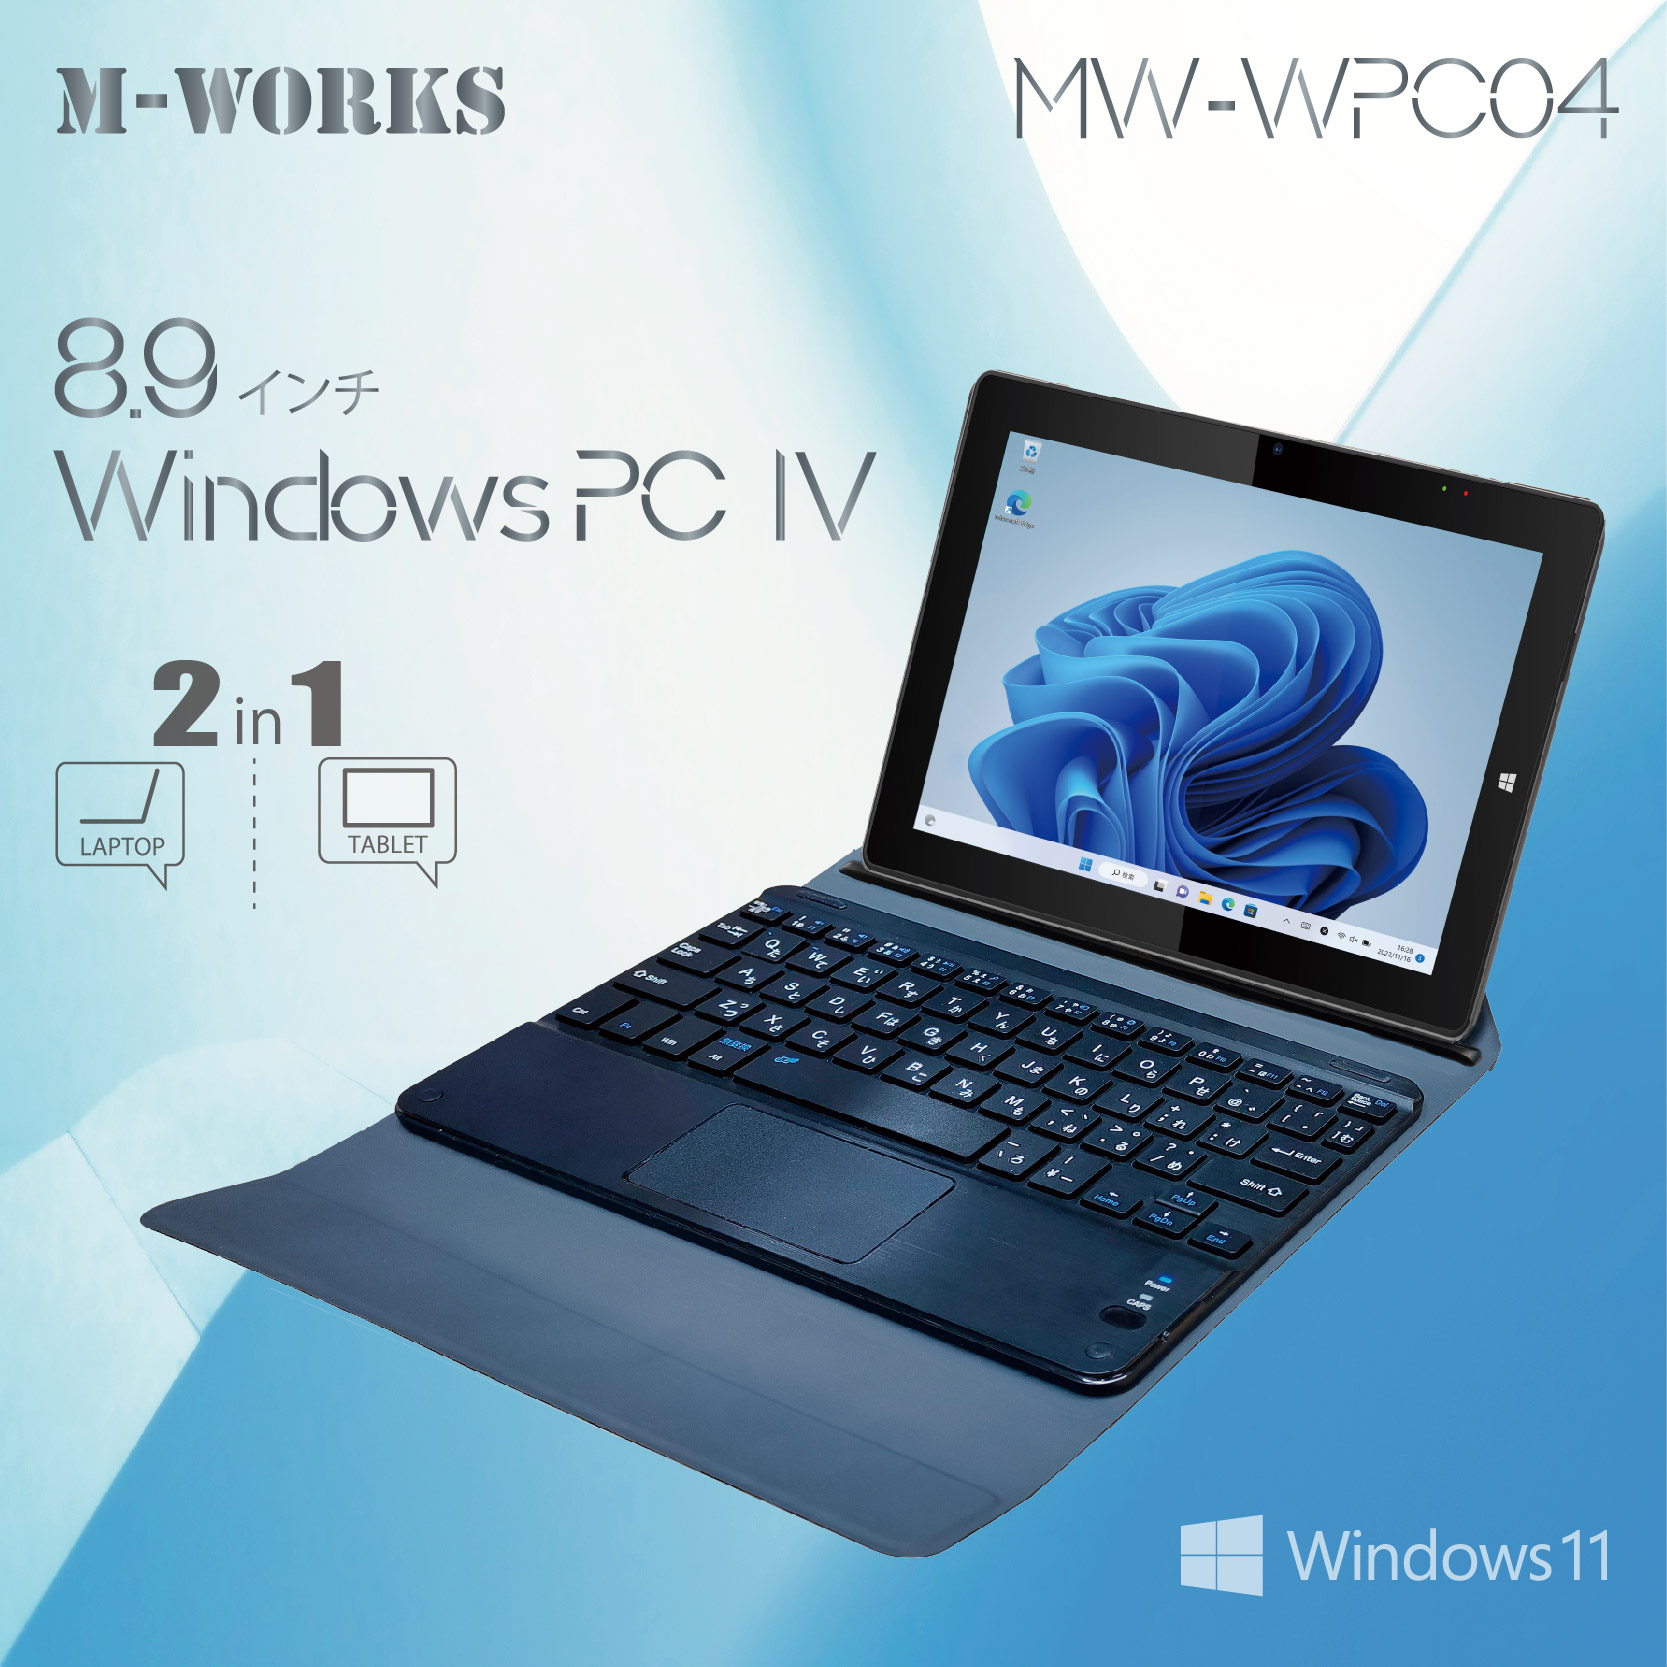 8.9インチWindowsPC　IV MW-WPC04